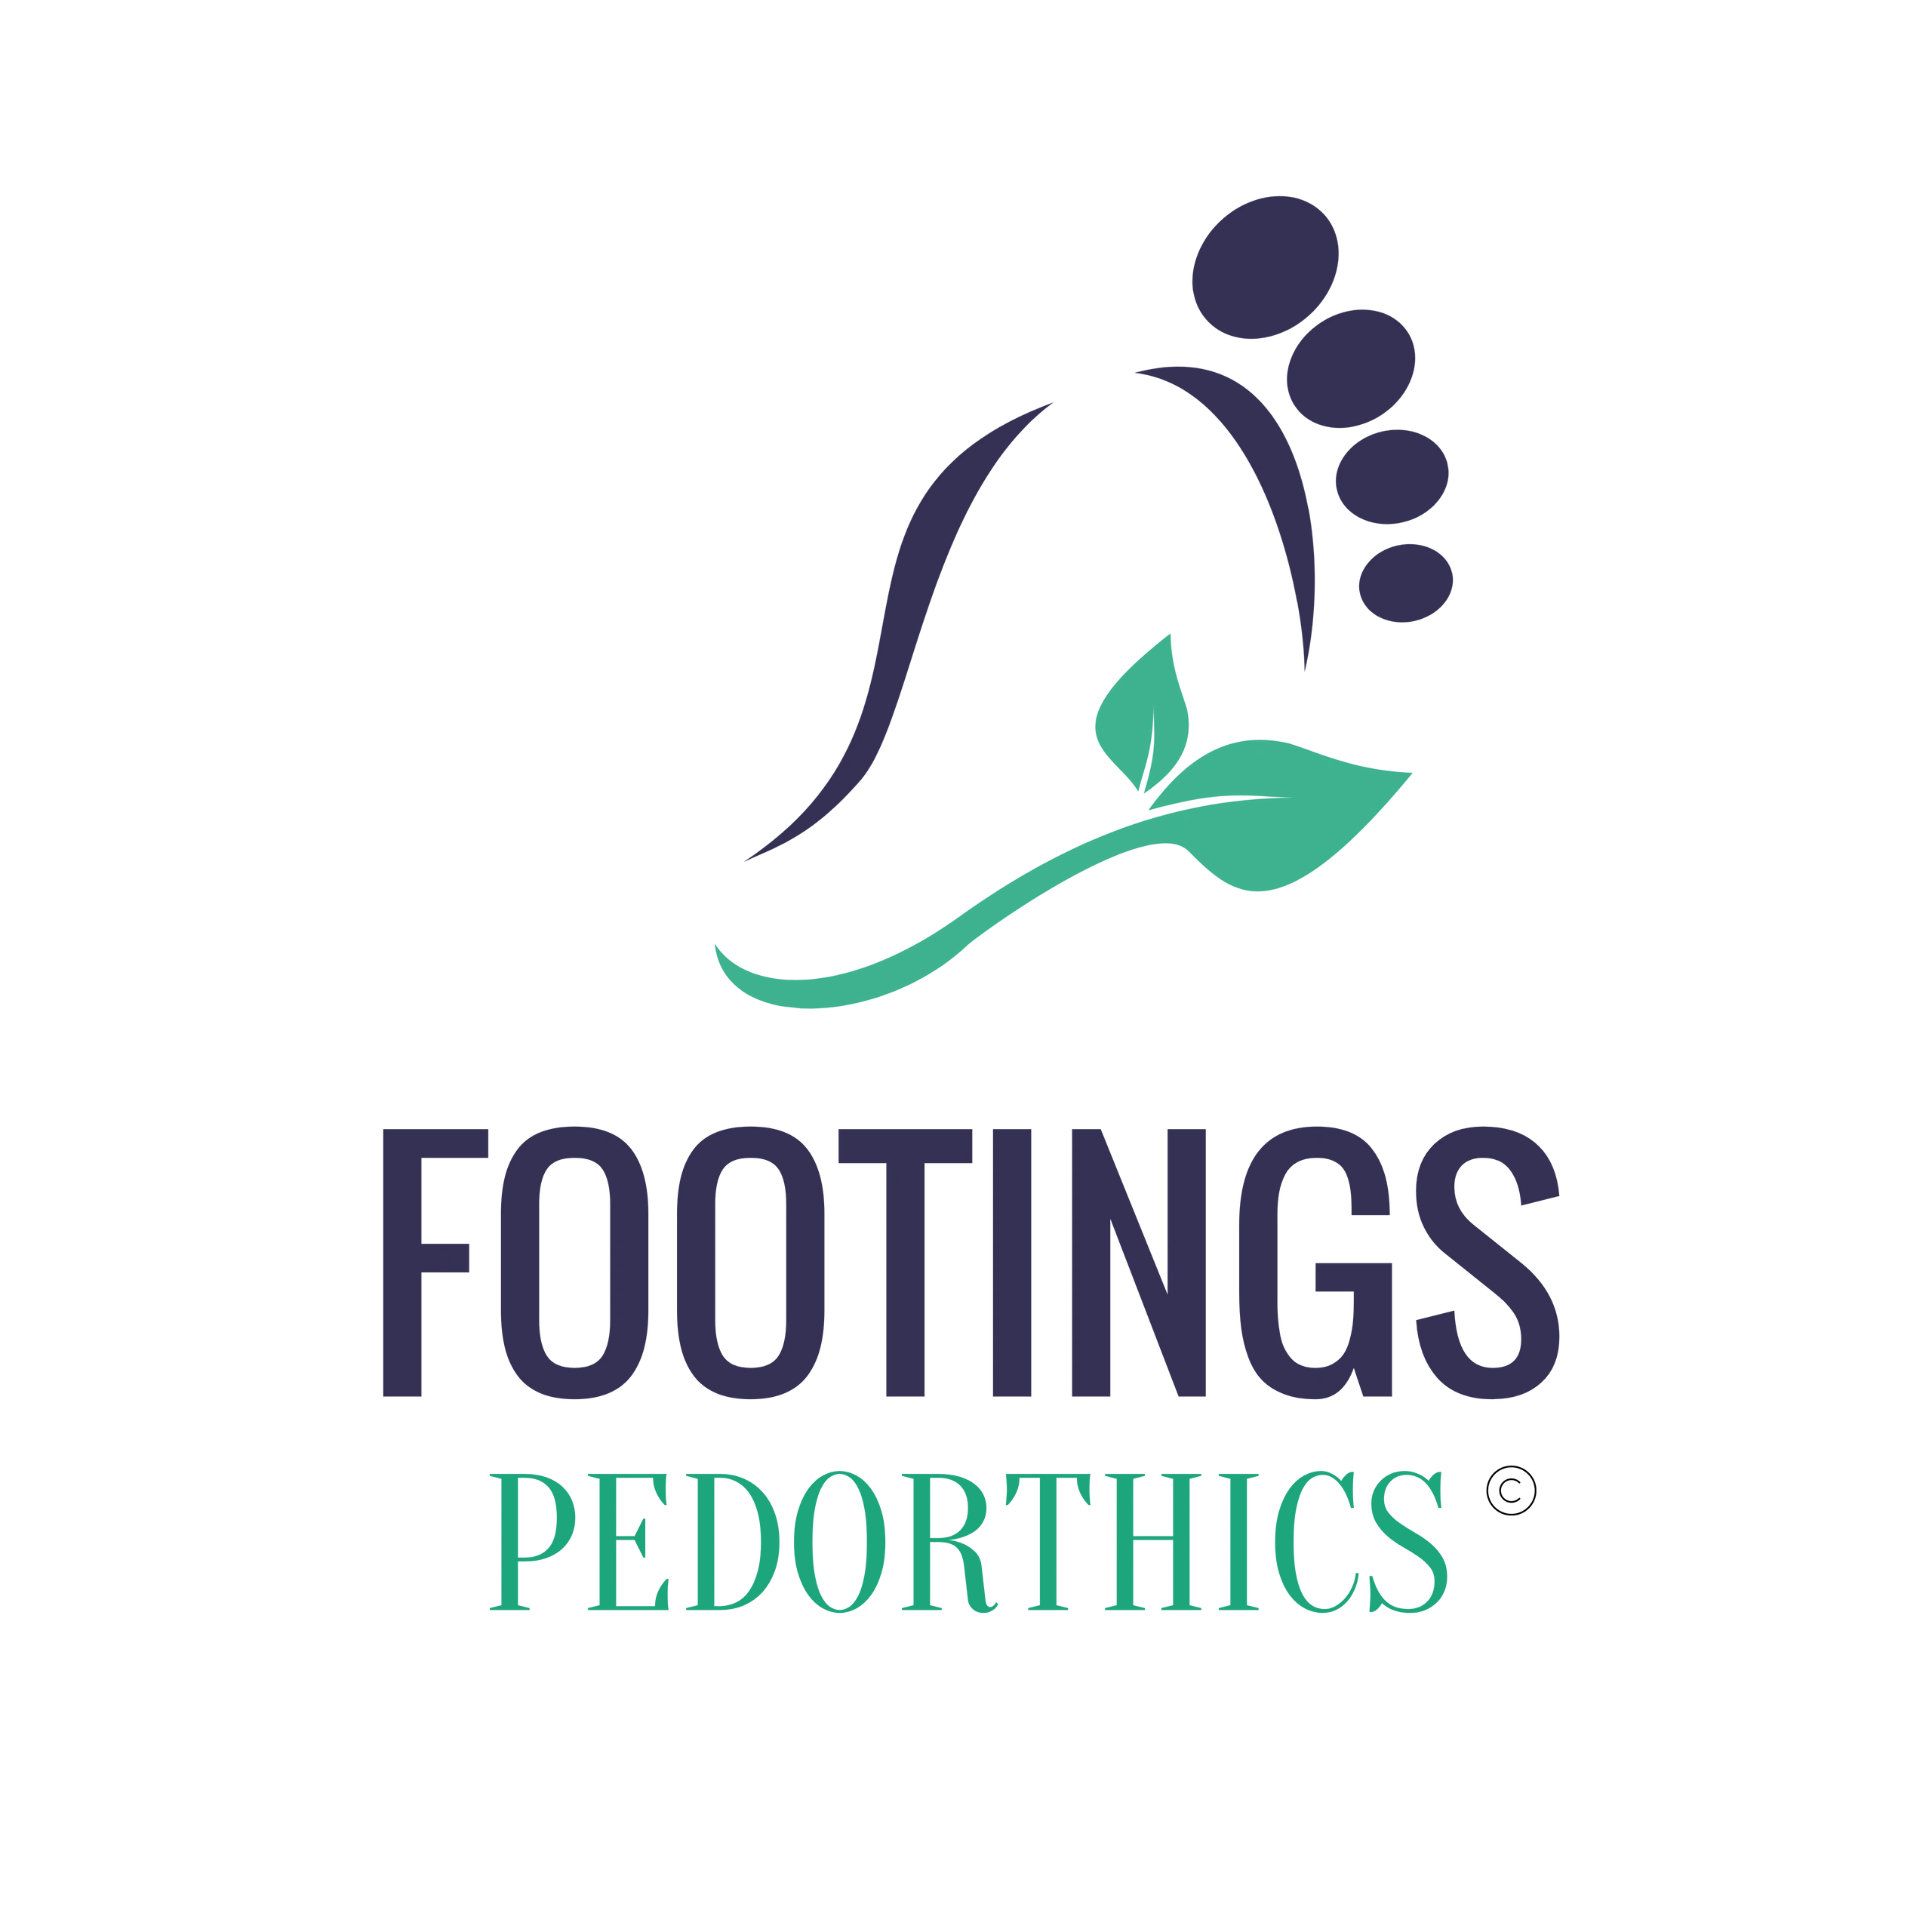 Footings, LLC - Orthotics, Footcare